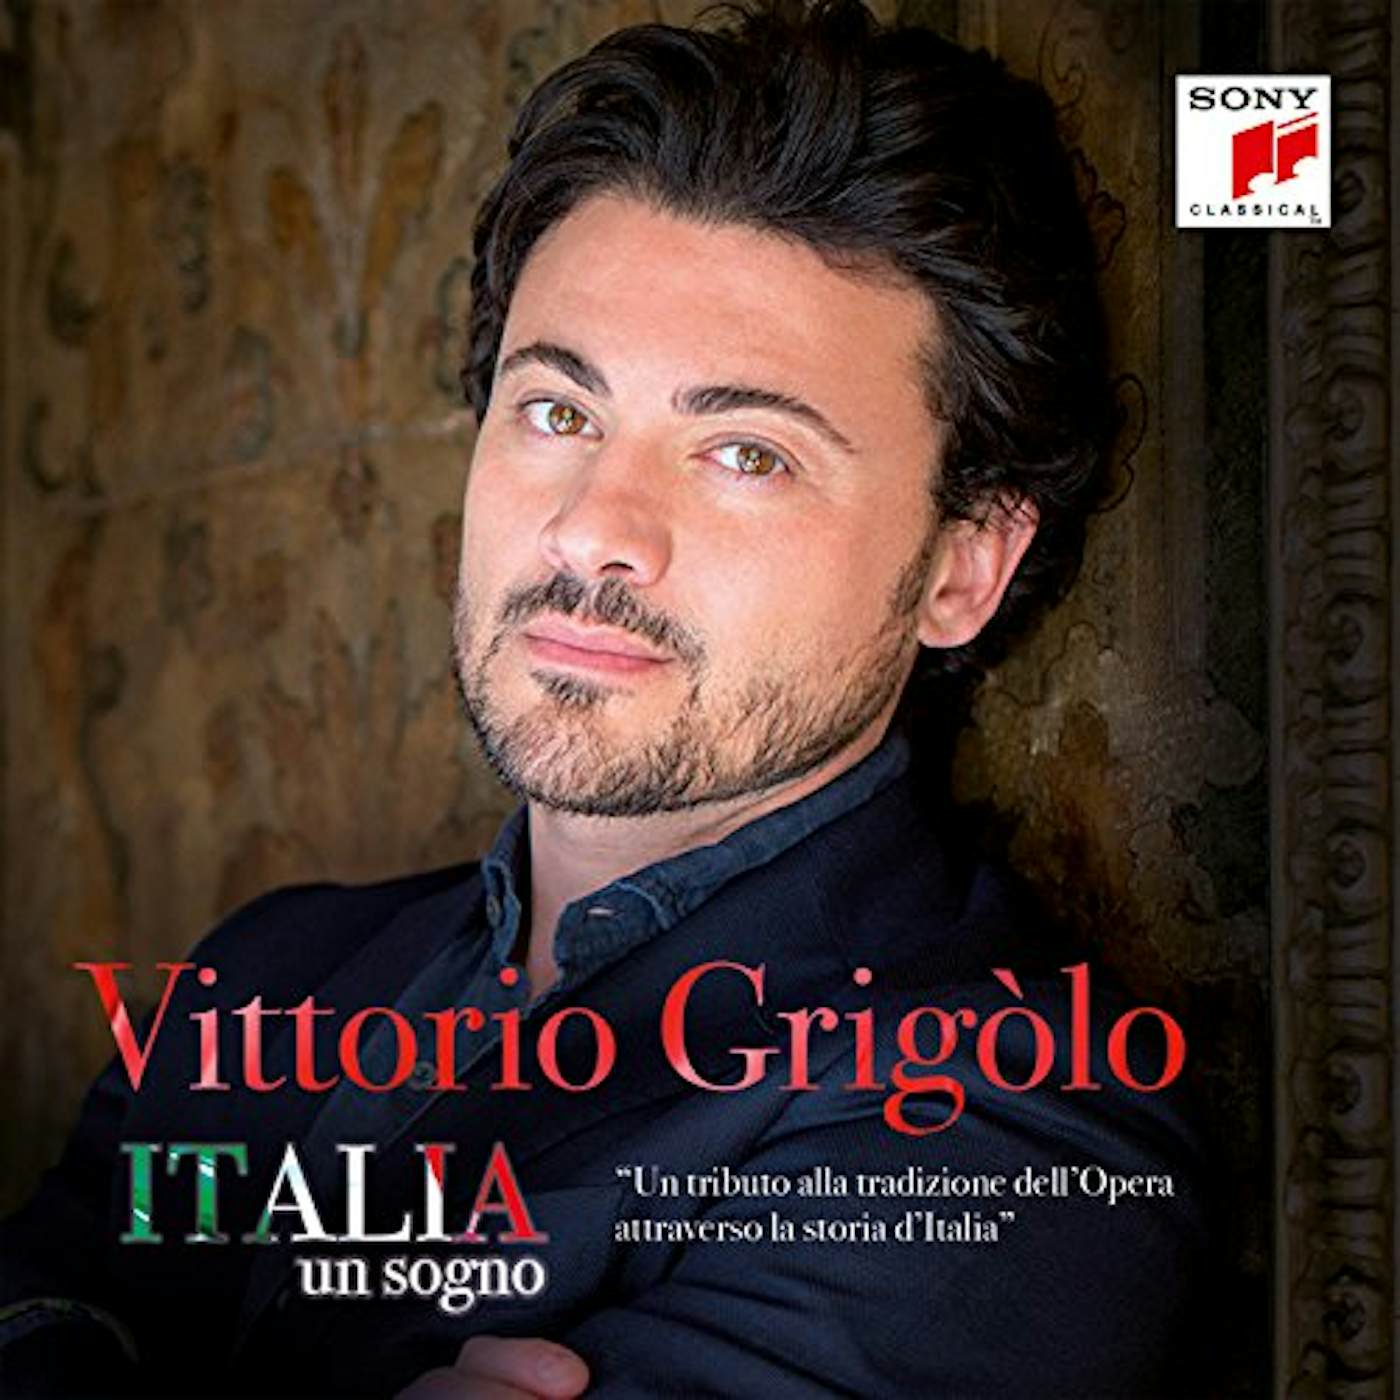 Vittorio Grigolo ITALIA UN SOGNO CD